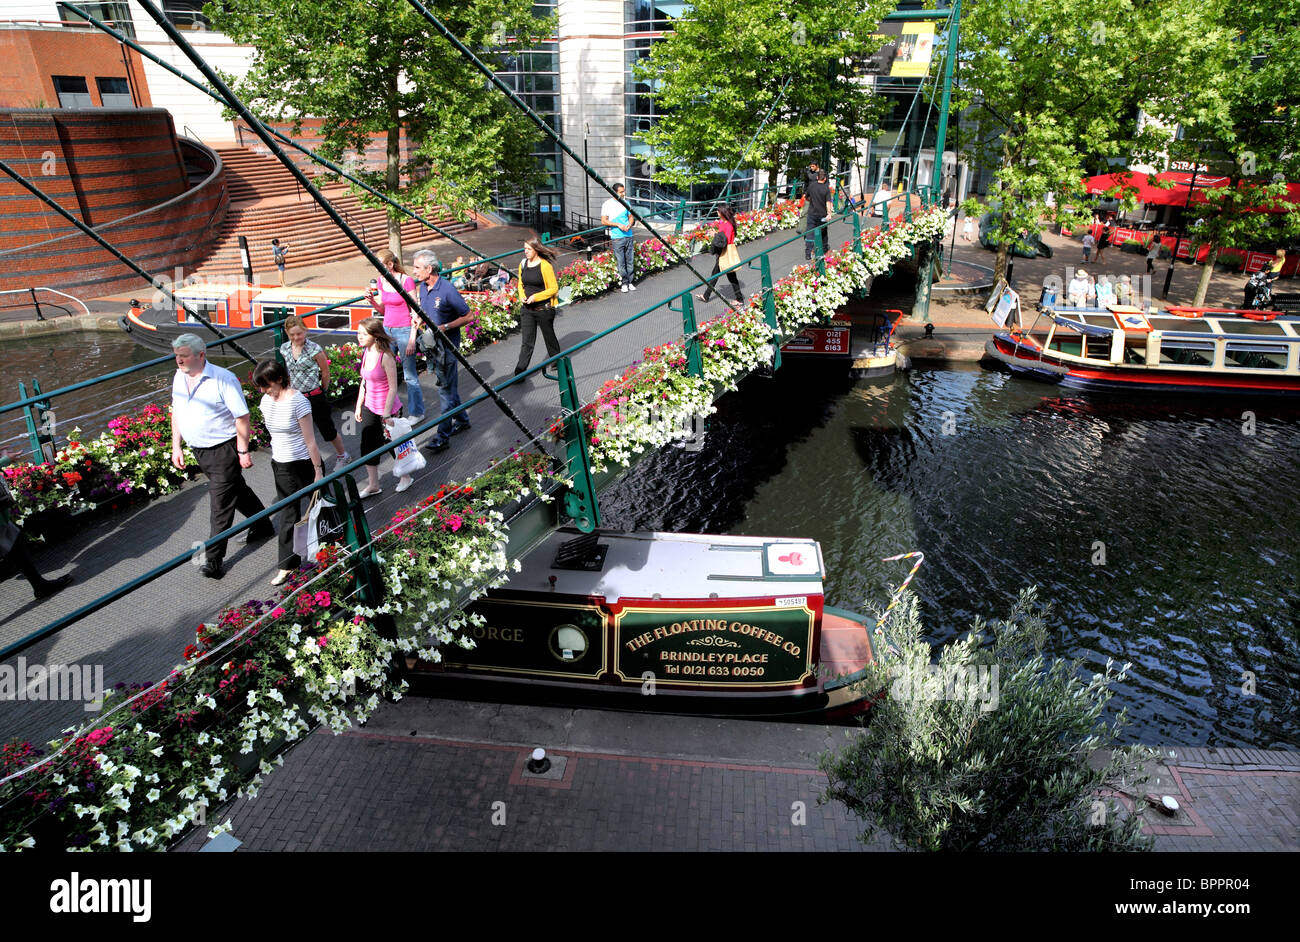 Pasarela conecta Brindleyplace al Centro Internacional de Convenciones (ICC) en el extremo del canal, Birmingham. Foto de stock